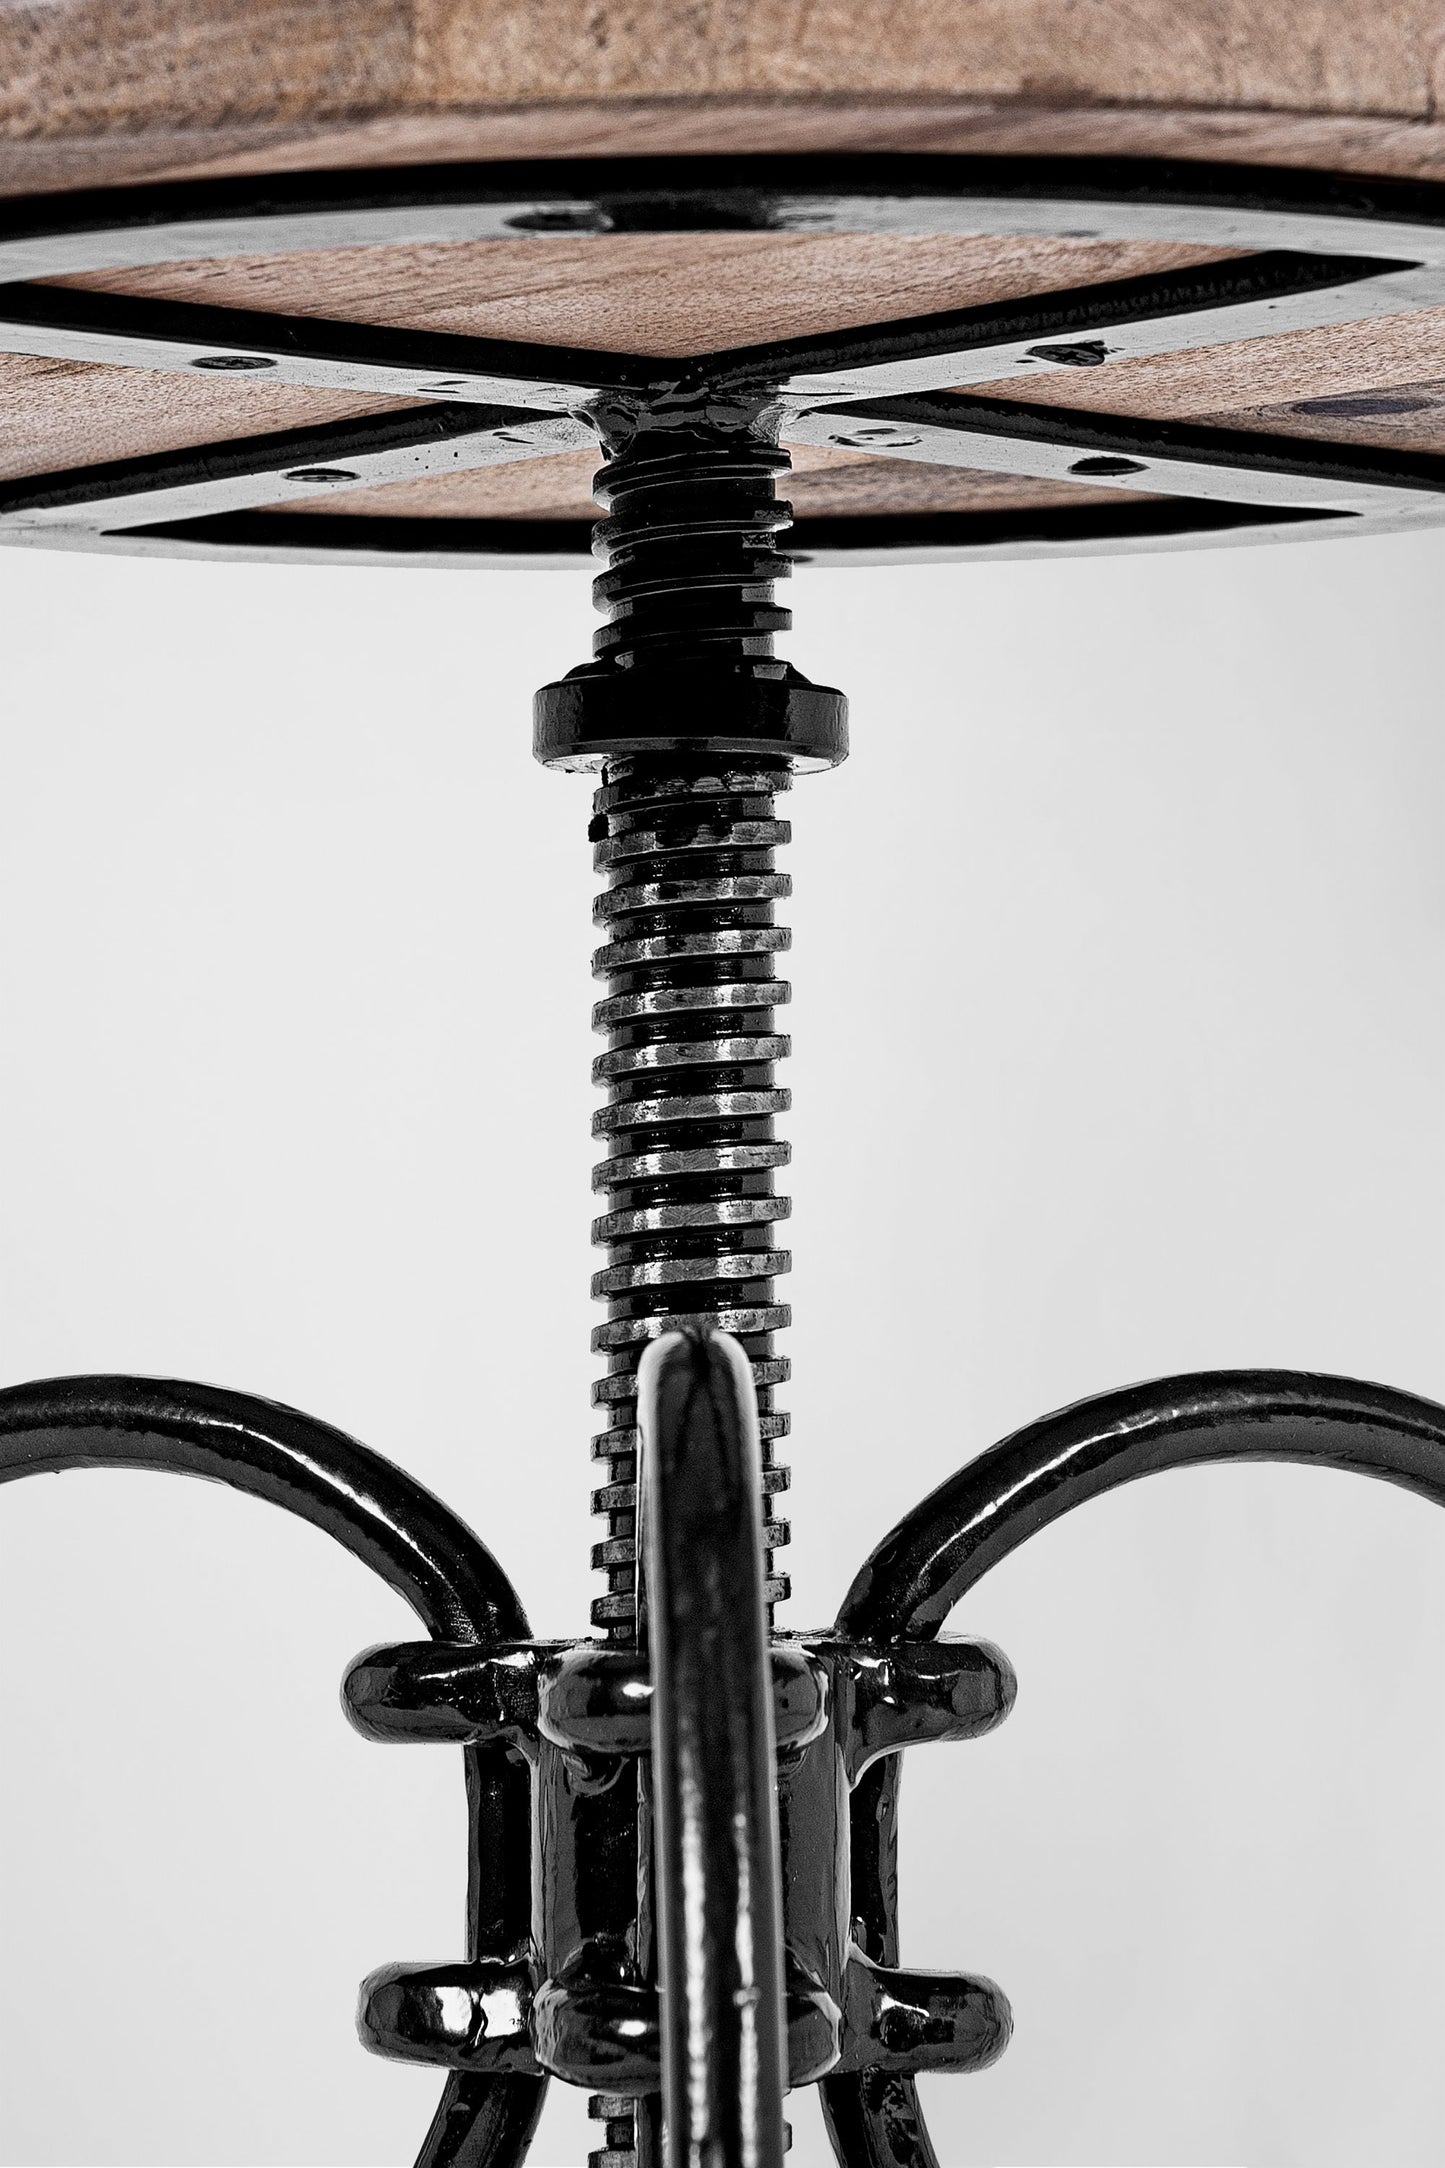 HairPin 101 – Retro Industrie Design Drehstuhl Hocker aus Metall mit Holzsitz